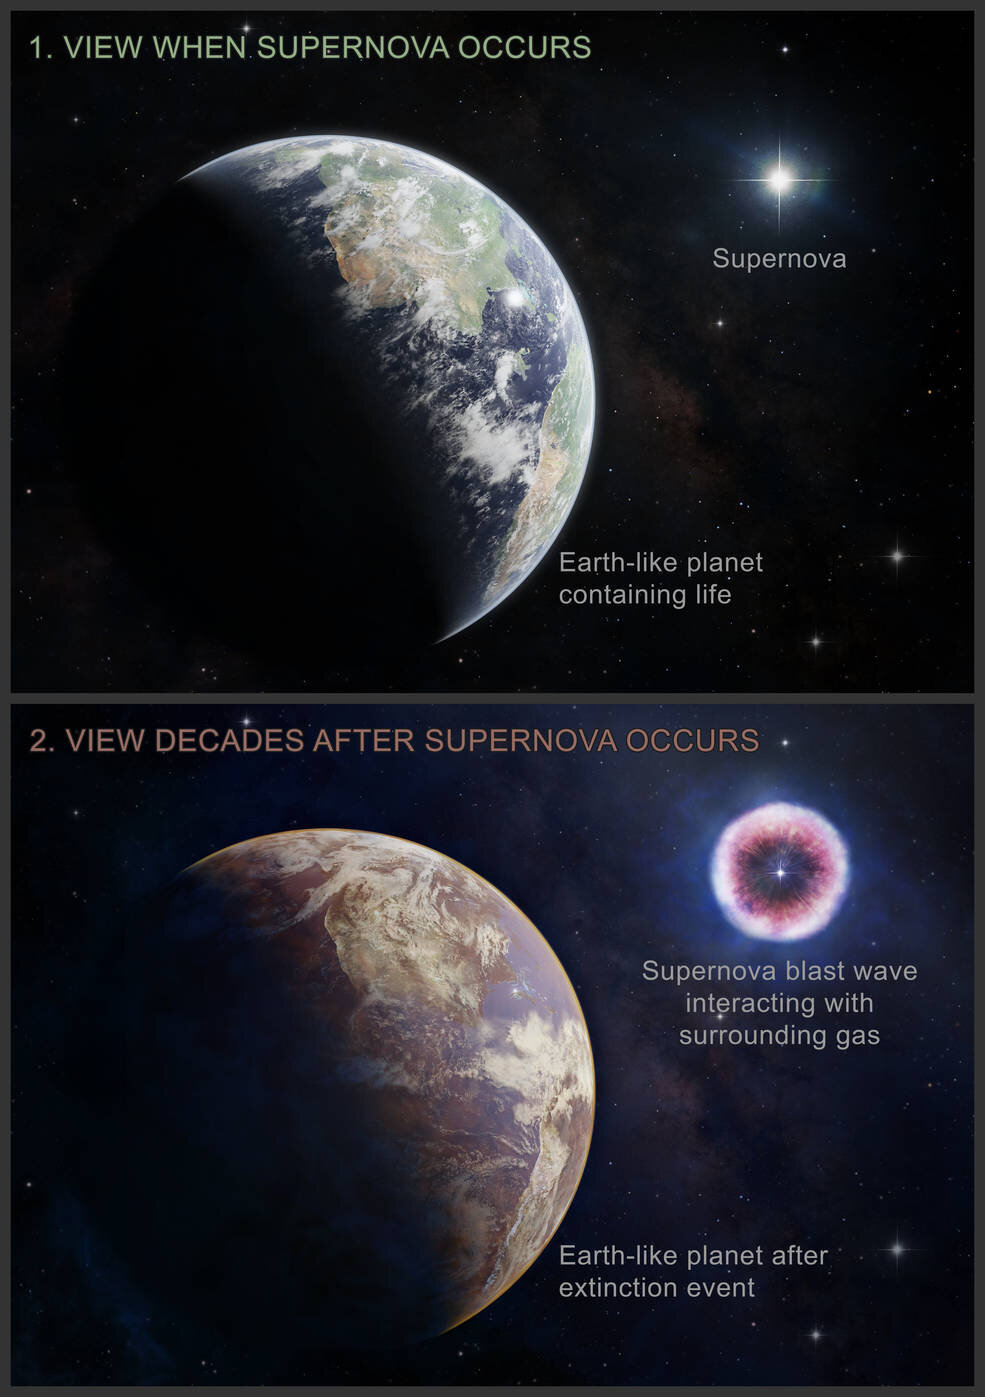 Иллюстрация похожей на Землю планеты до и после радиационного облучения. 